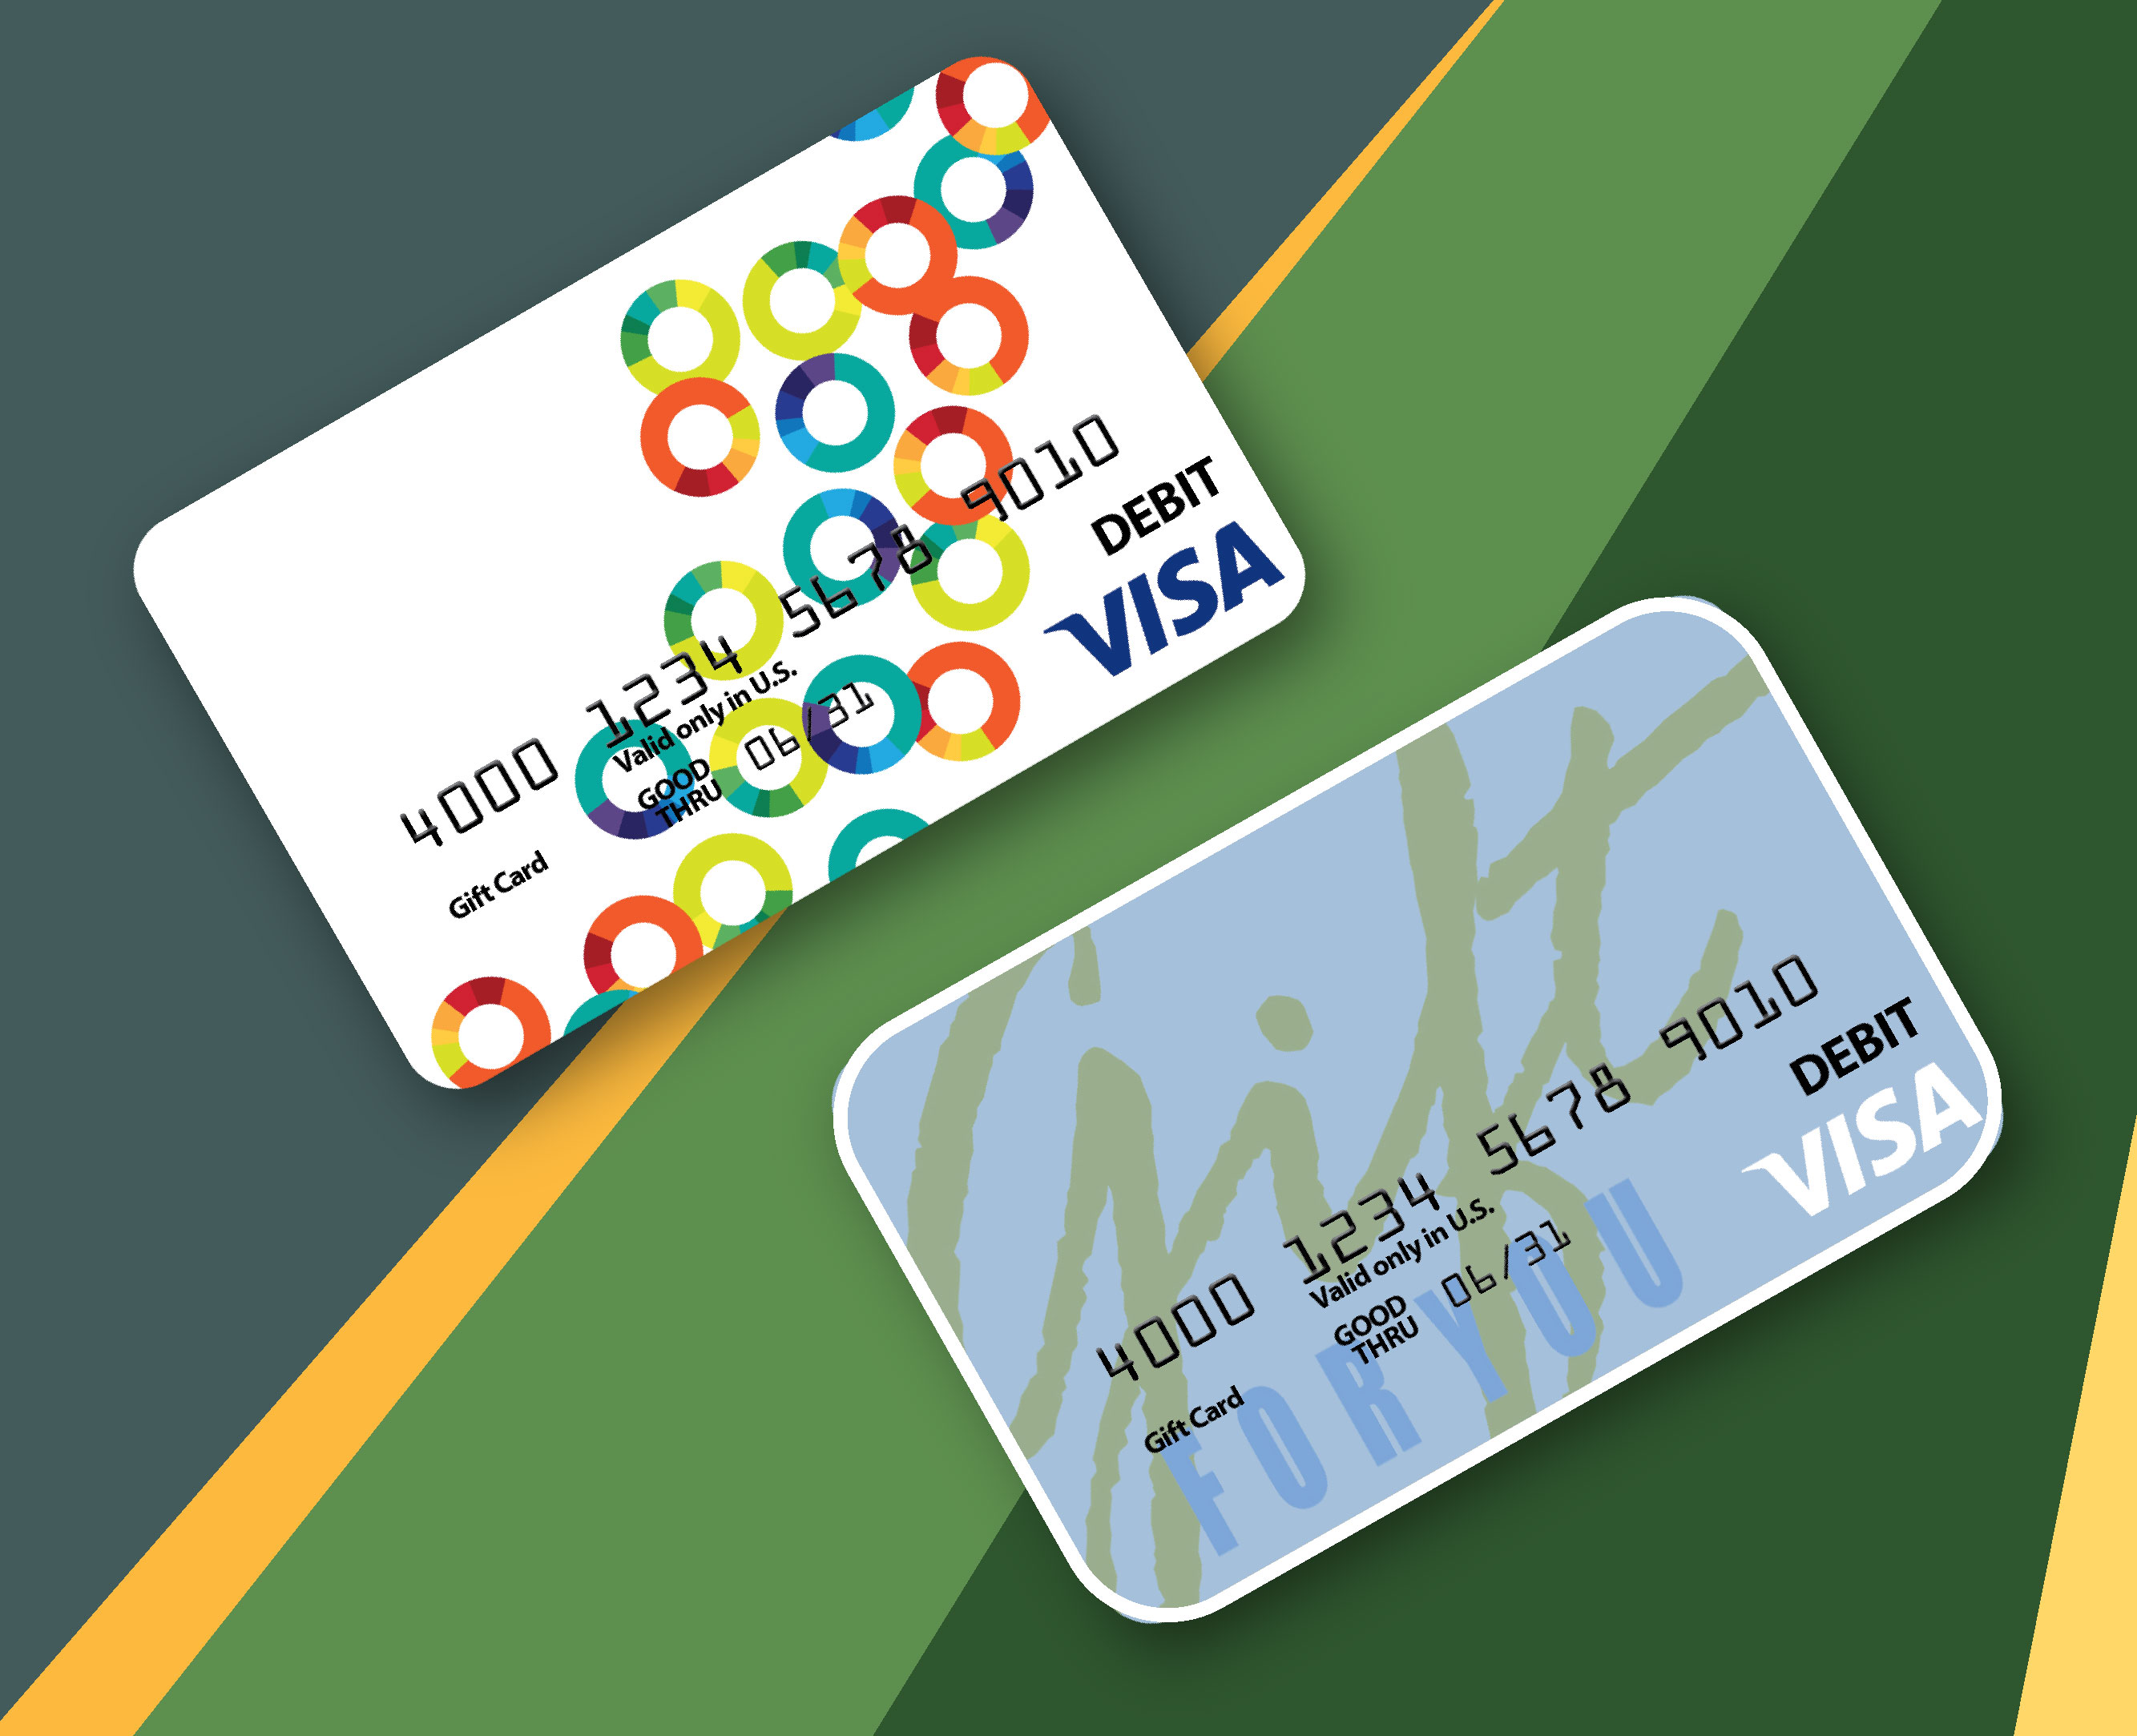 Summer visa gift card images